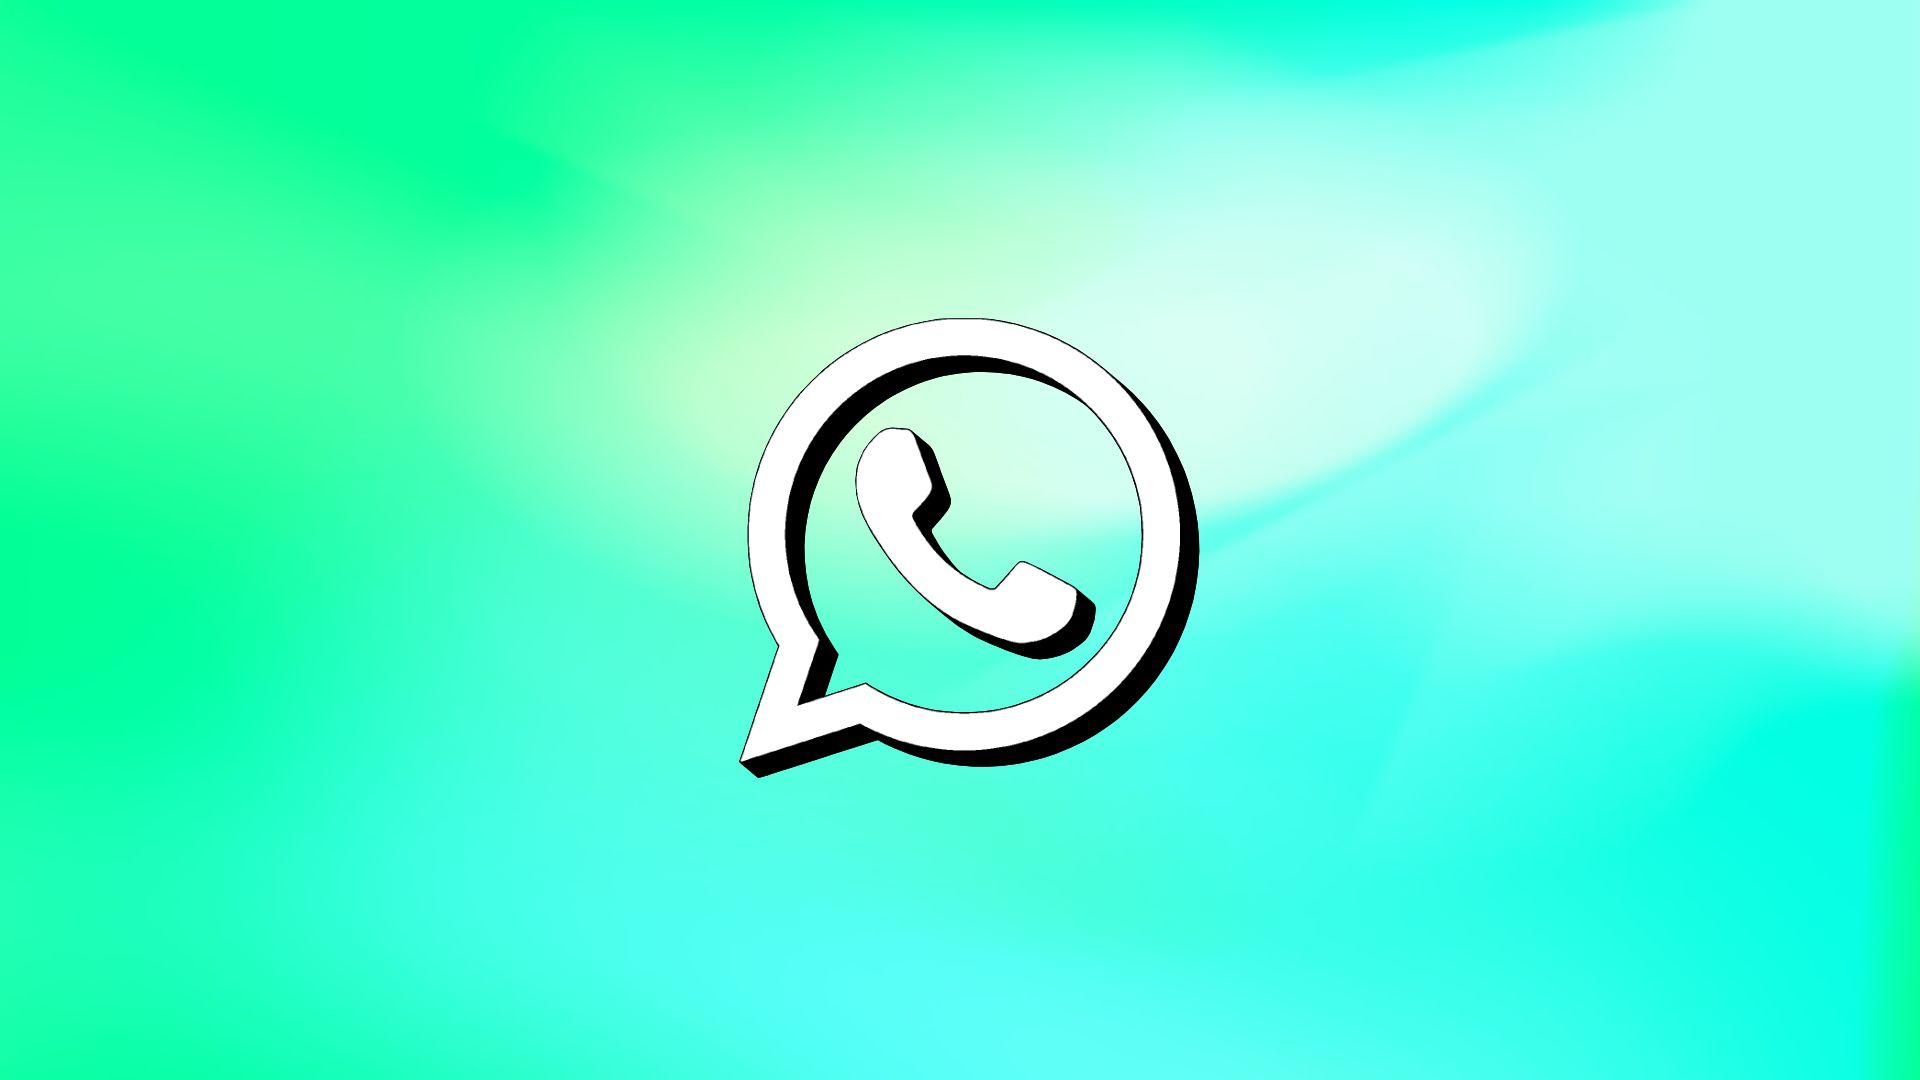 10 brincadeiras para WhatsApp para agitar suas notificações - Canaltech